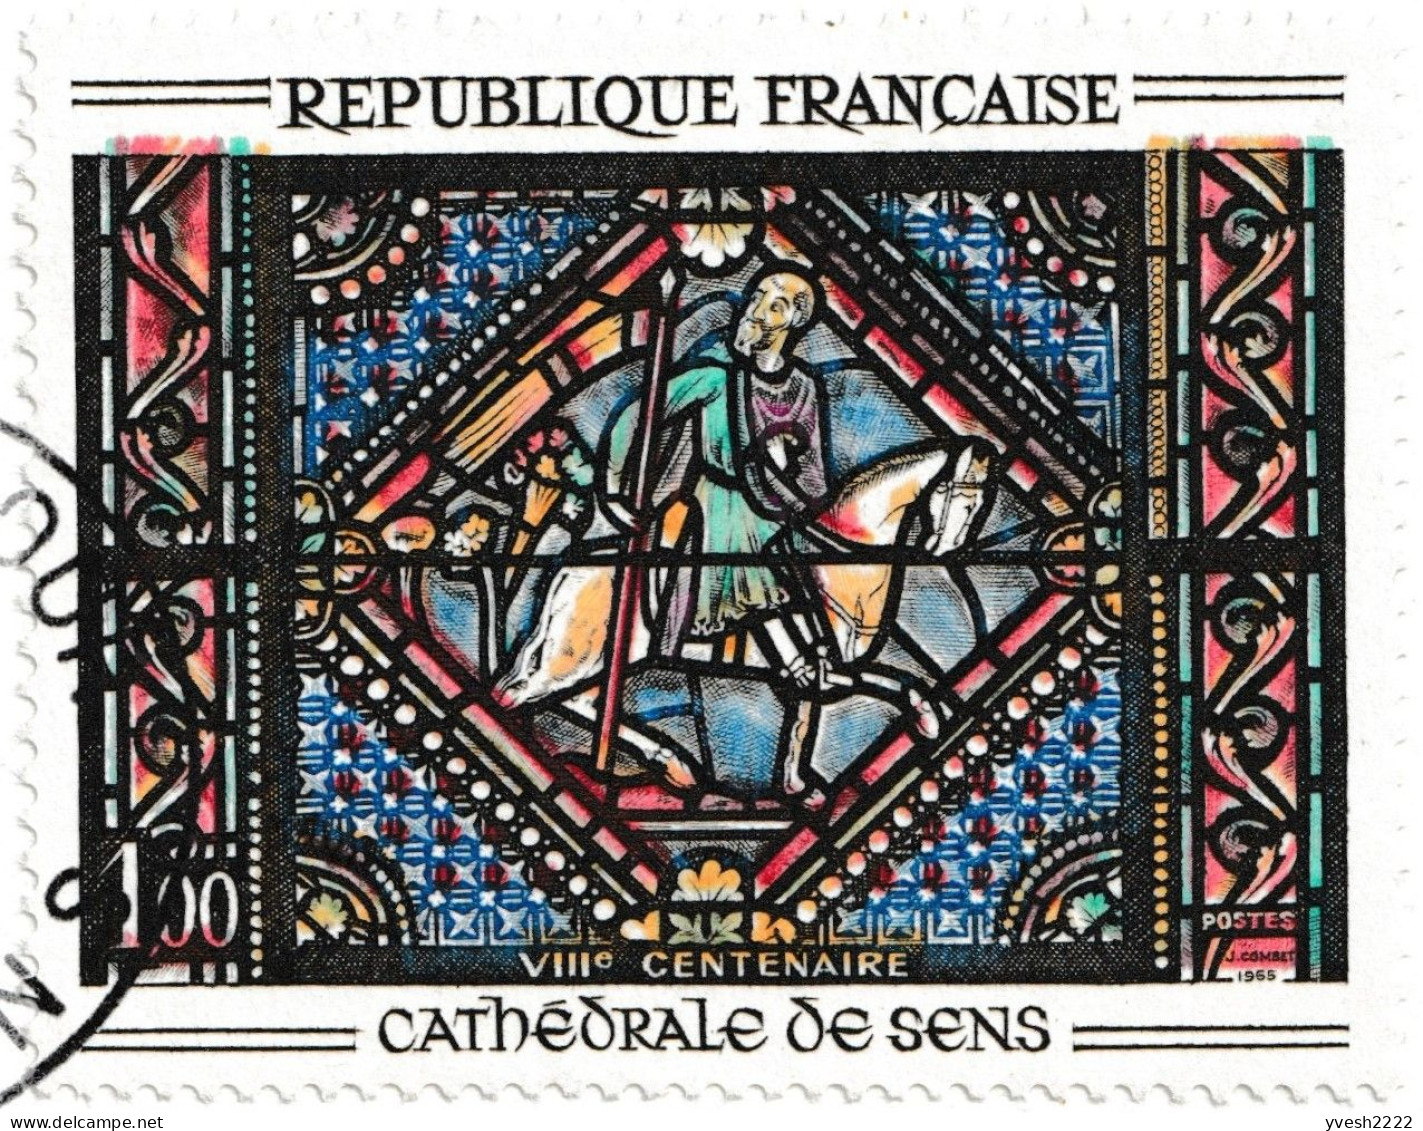 France 1965 Y&T 1427. 3 cartes maximum, curiosités d'impression. Vitrail de la cathédrale de Sens. Couleurs déplacées...